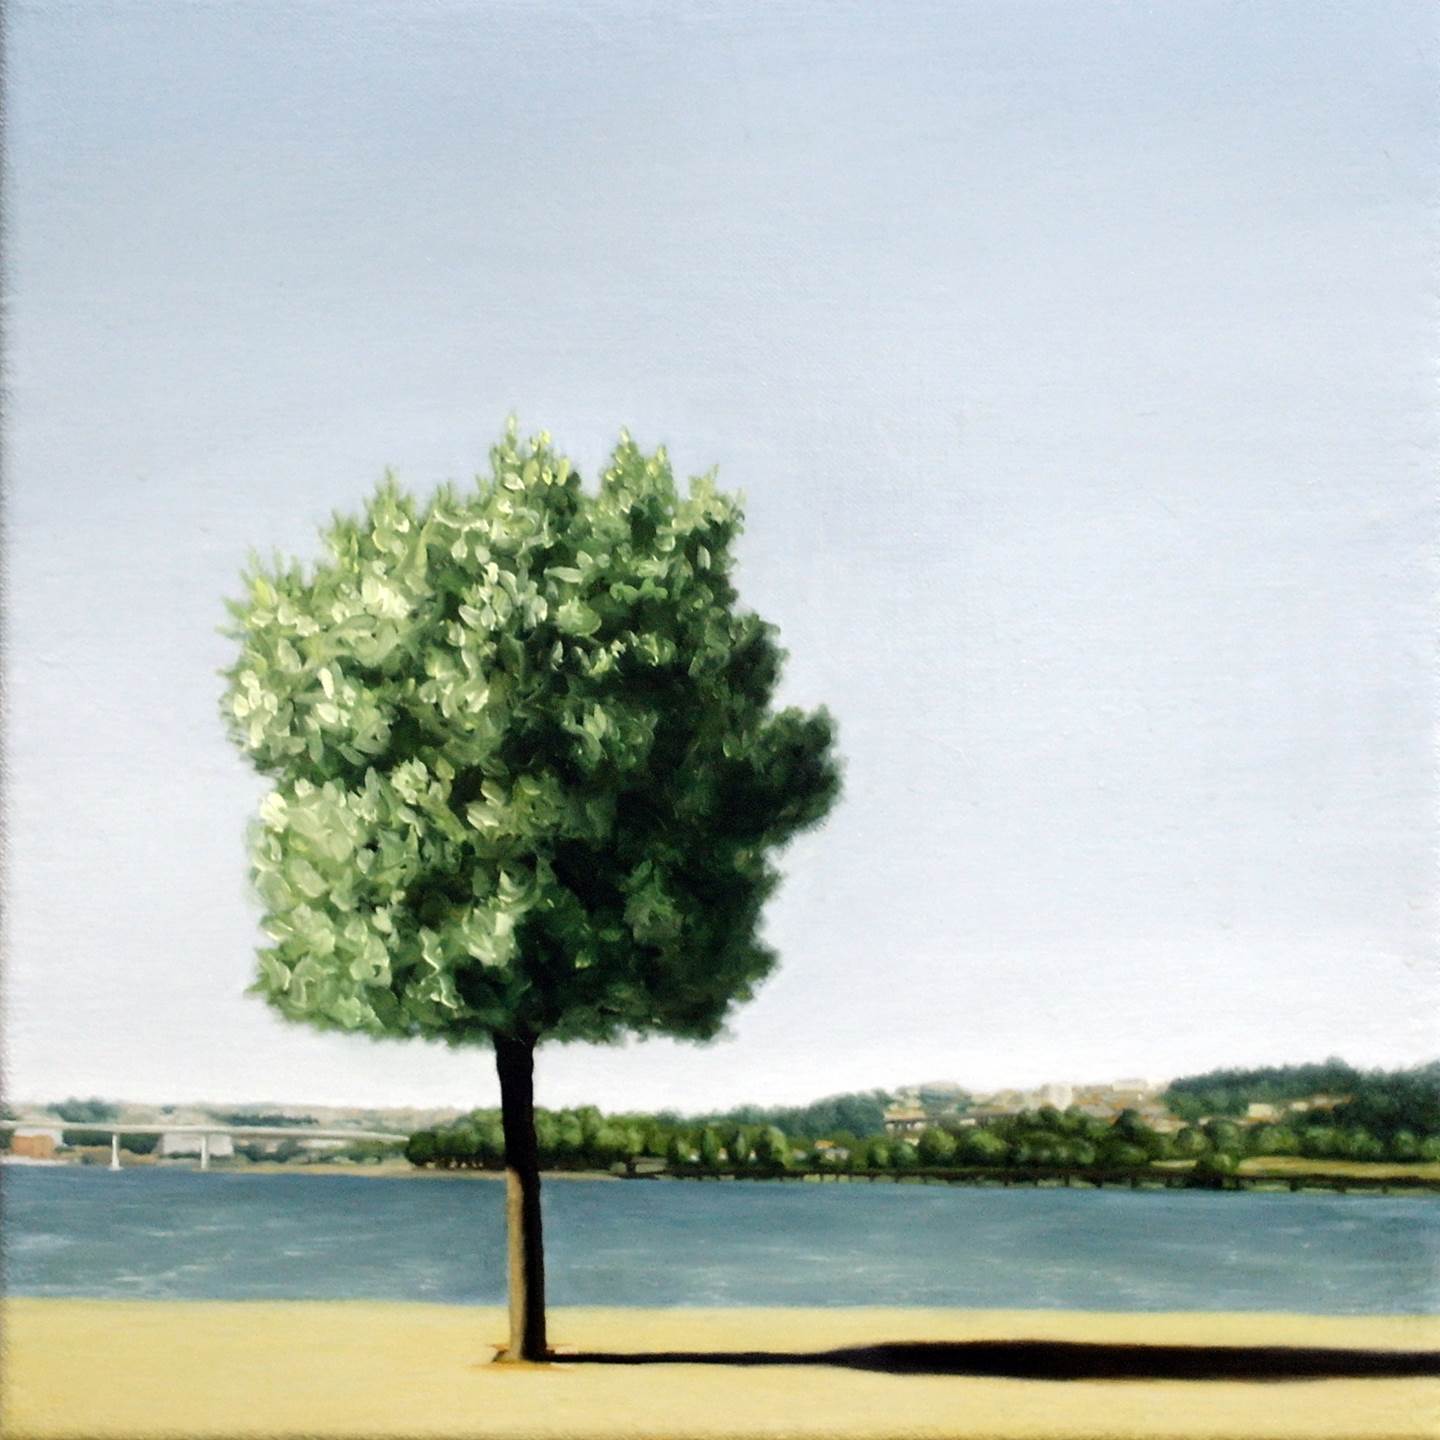 Tiro - Memento 3, original Landscape Canvas Painting by Alexandre Coxo